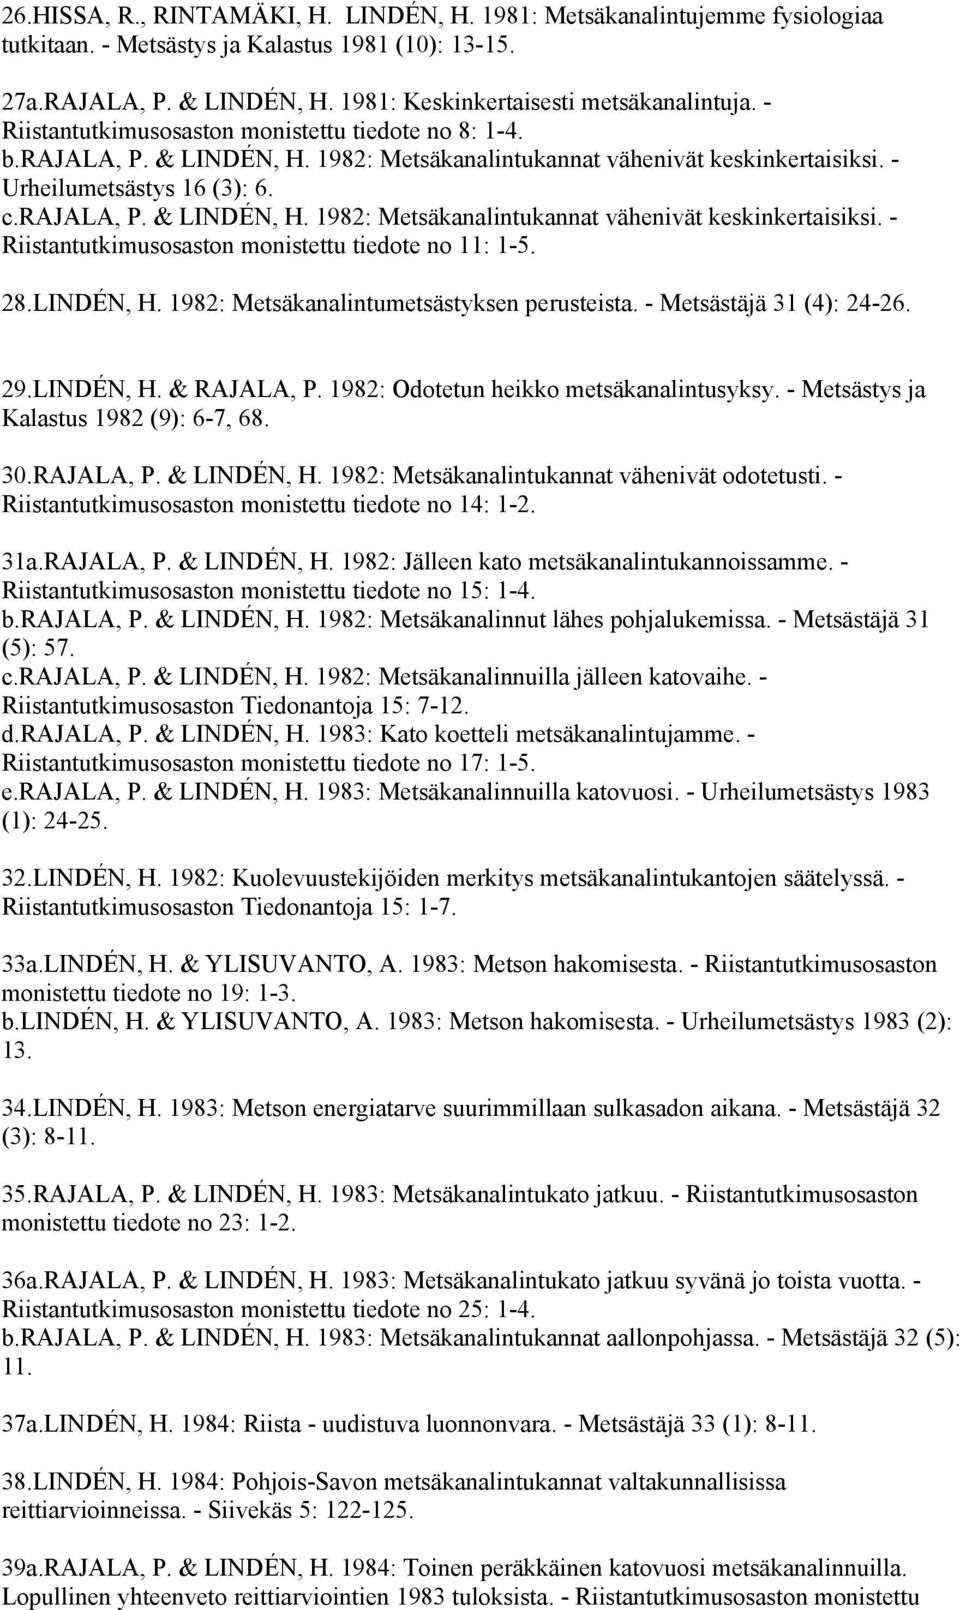 28.LINDÉN, H. 1982: Metsäkanalintumetsästyksen perusteista. - Metsästäjä 31 (4): 24-26. 29.LINDÉN, H. & RAJALA, P. 1982: Odotetun heikko metsäkanalintusyksy. - Metsästys ja Kalastus 1982 (9): 6-7, 68.